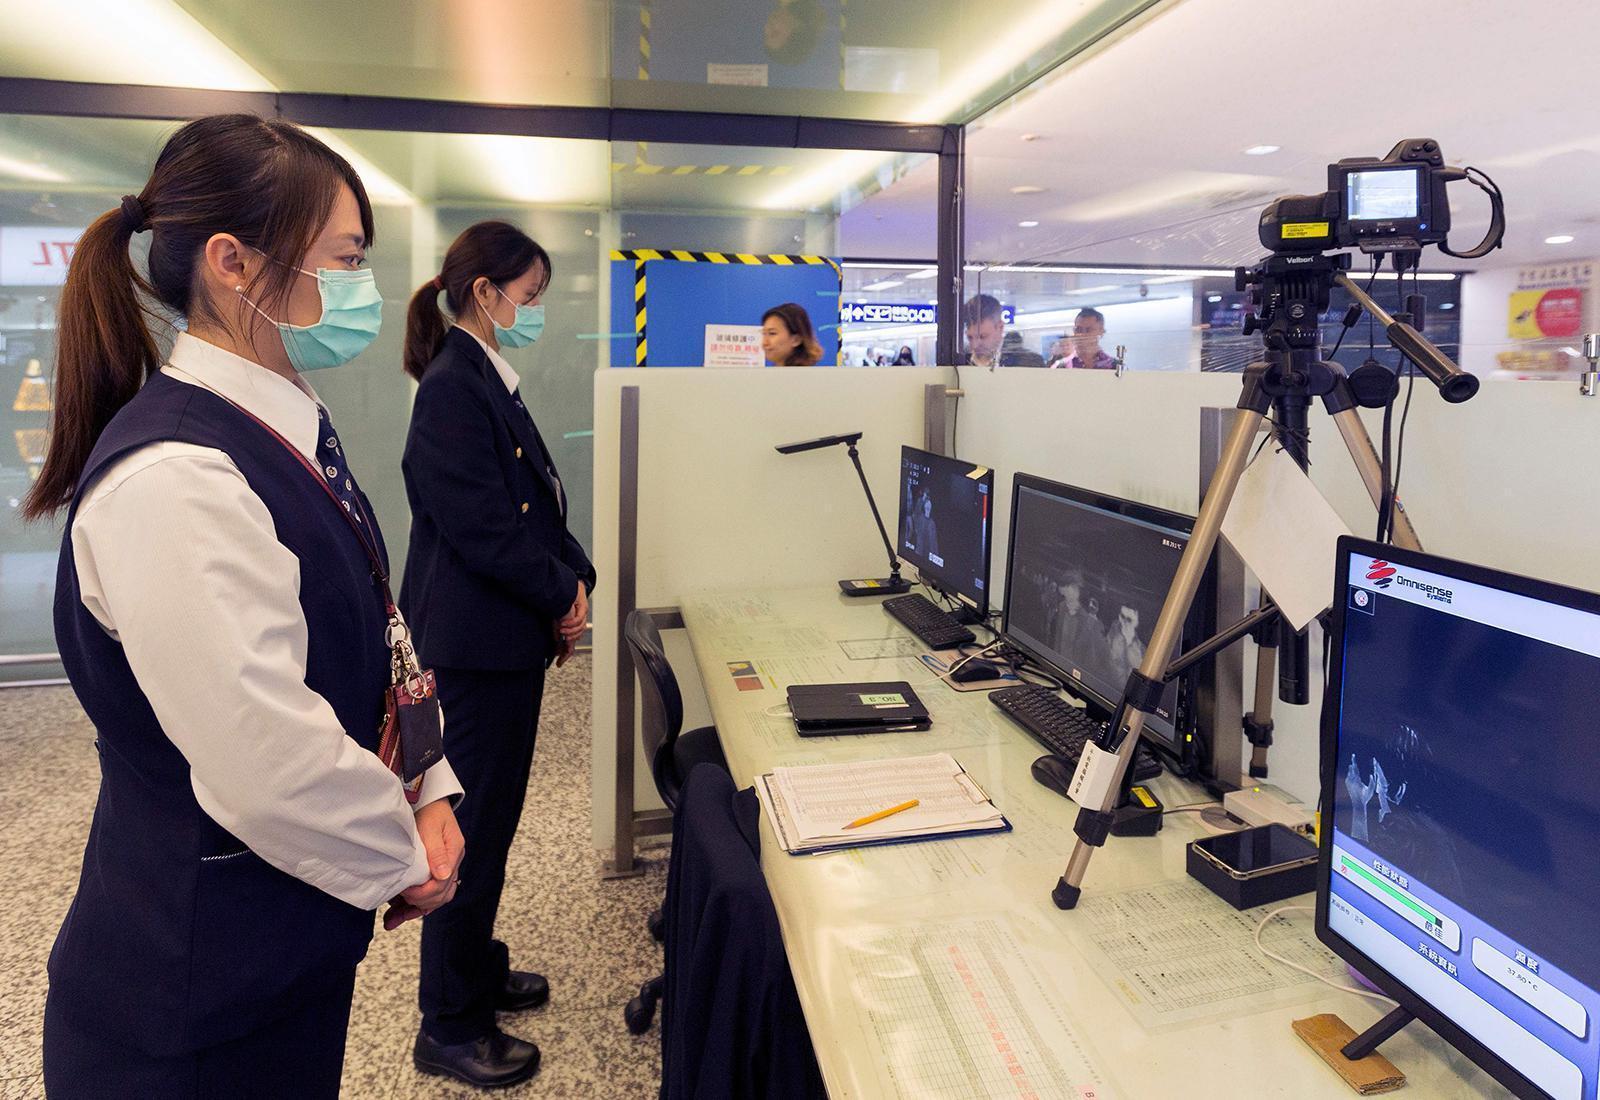 Çinde görülen koronavirüs salgını ABDye ulaştı